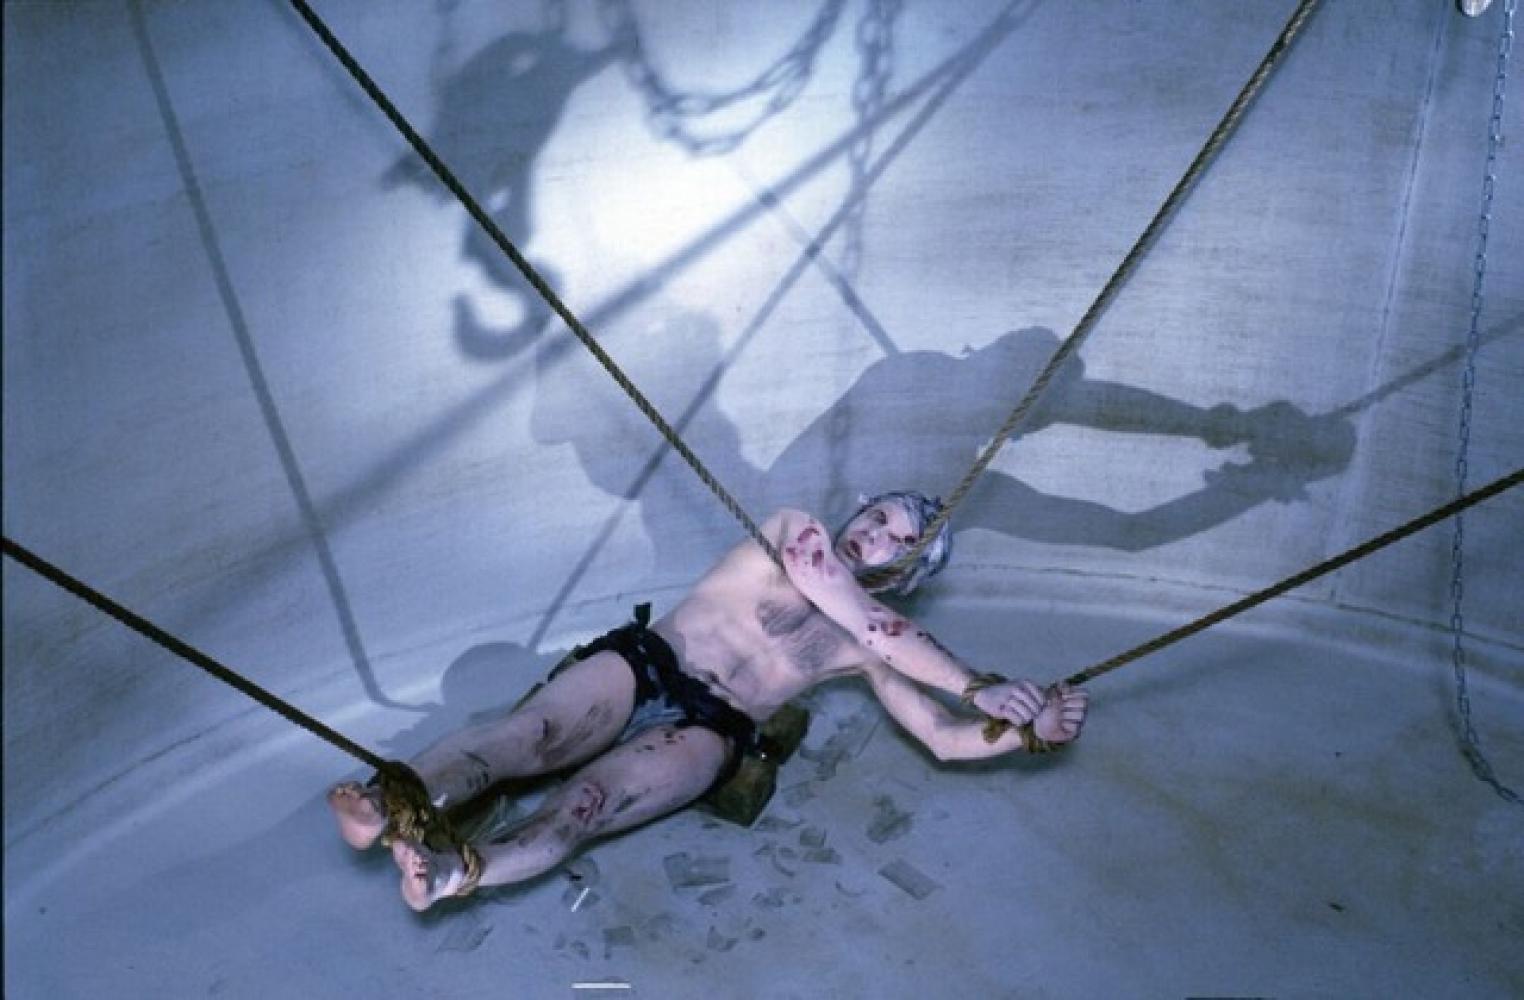 "Die Folter des Heiligen Tribunals – Goya Episode", Kontext: "Freak Orlando", Berlin, 1981